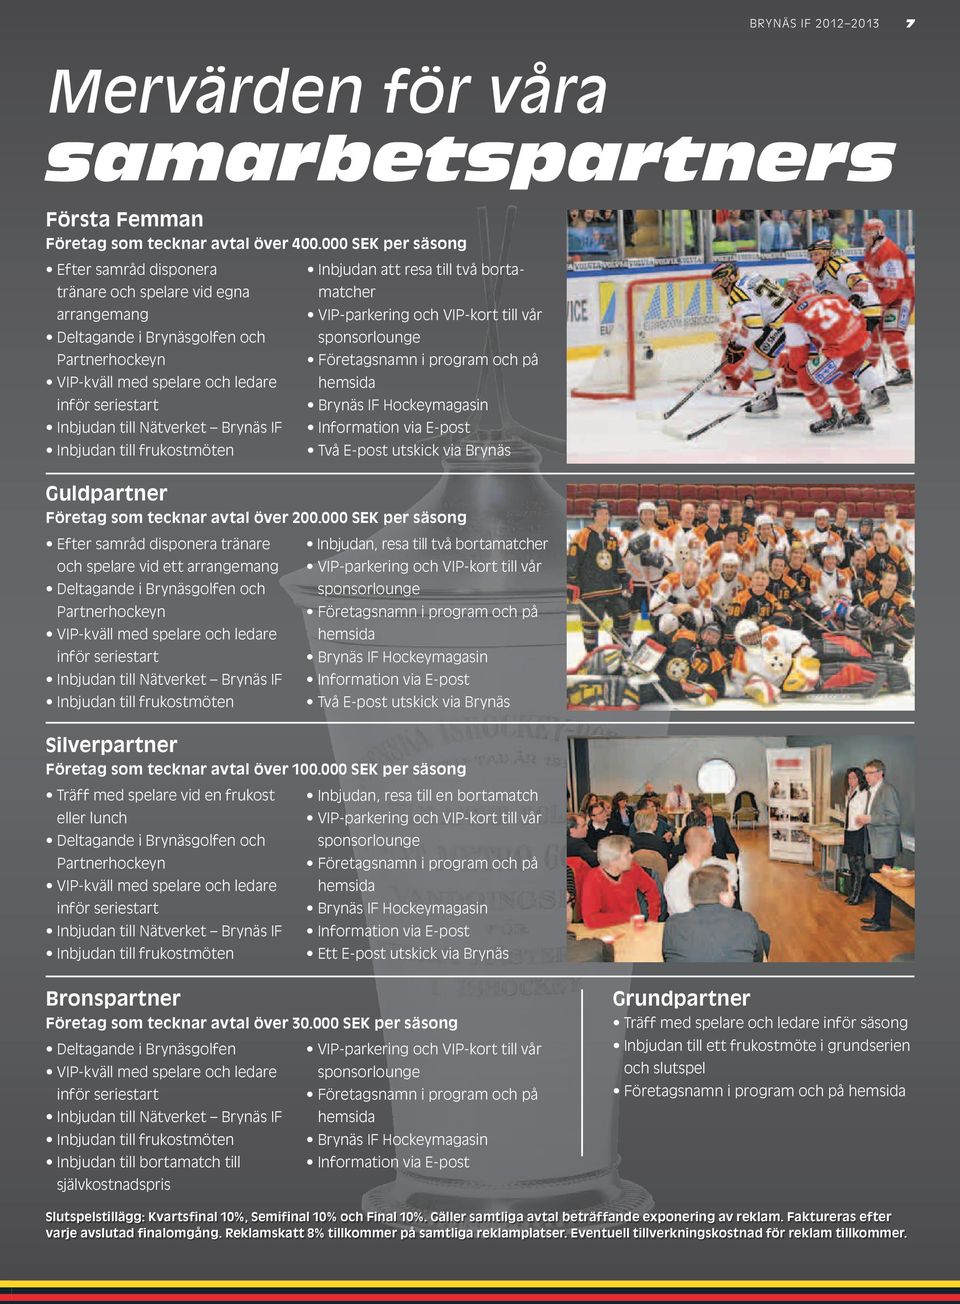 sponsorlounge Partnerhockeyn Företagsnamn i program och på VIP-kväll med spelare och ledare hemsida inför seriestart Brynäs IF Hockeymagasin Inbjudan till Nätverket Brynäs IF Information via E-post